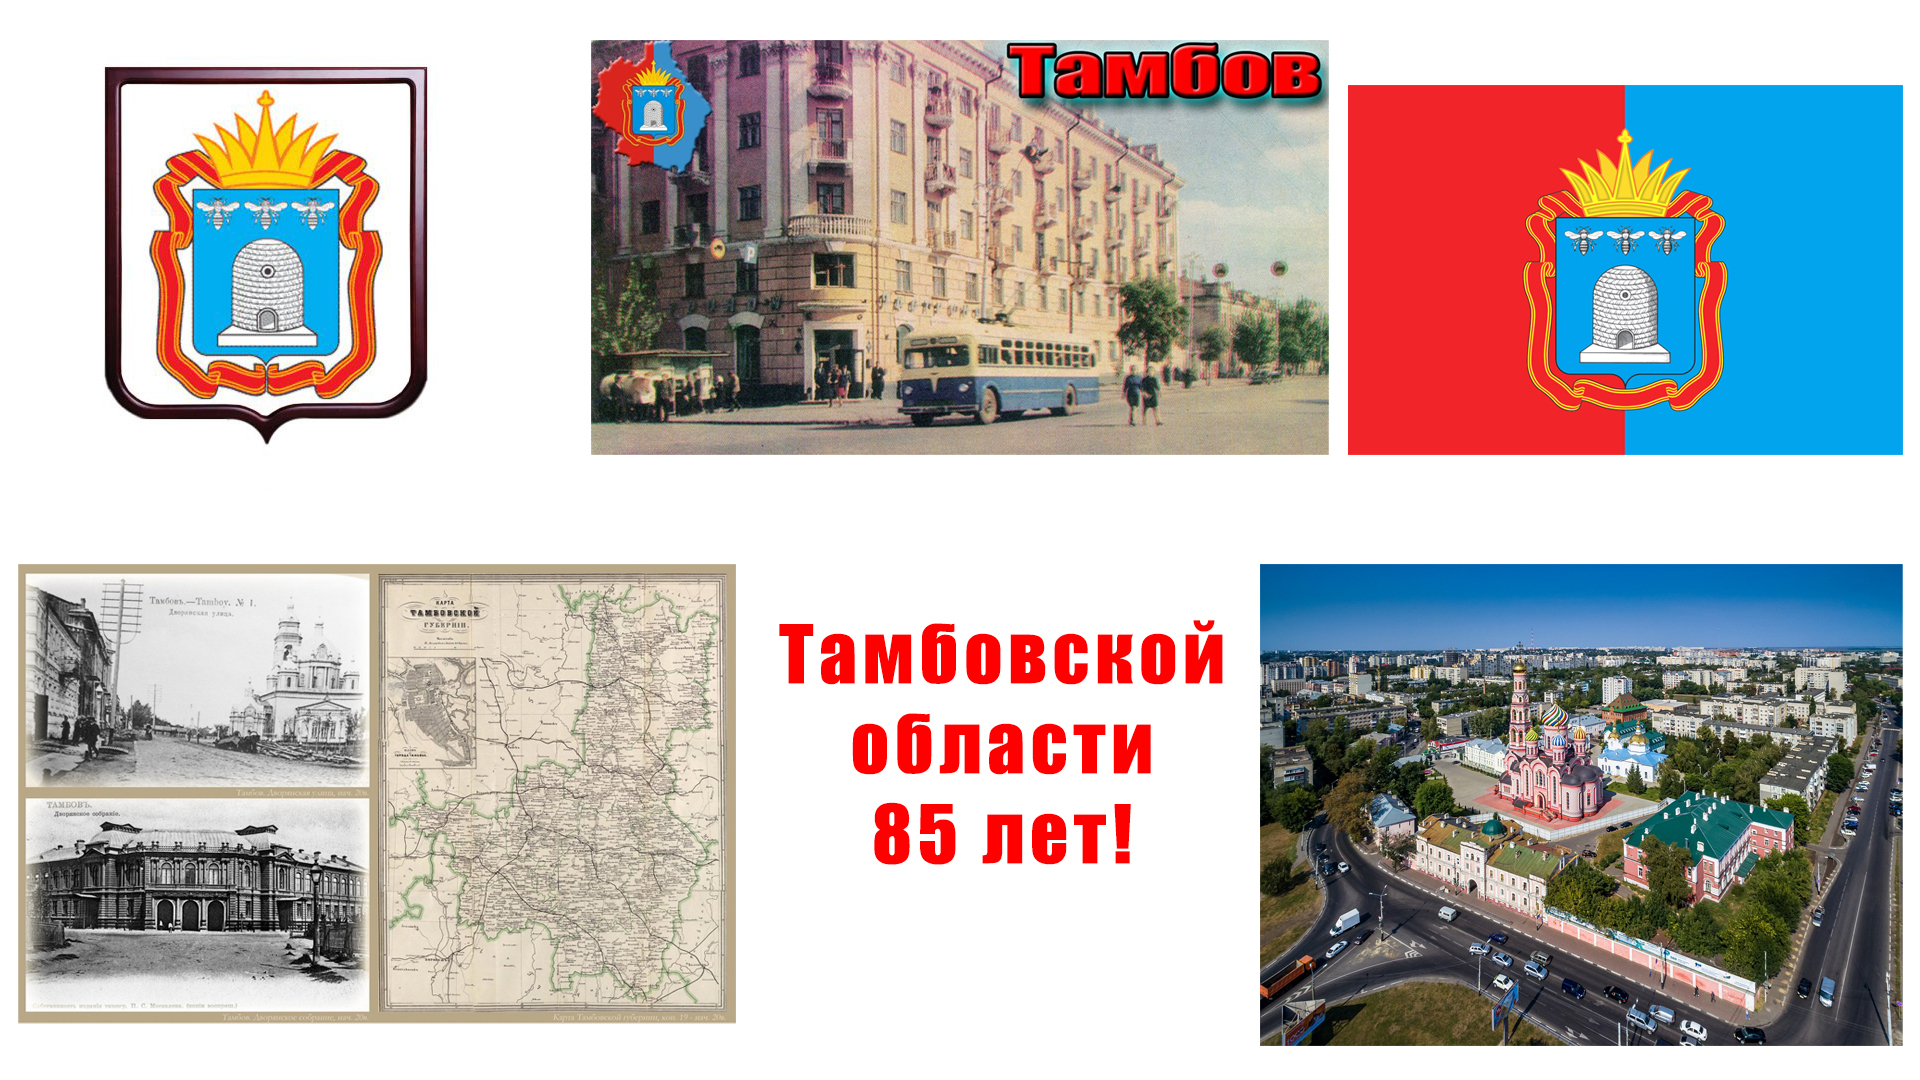 Вы сейчас просматриваете Сегодня замечательный день — Тамбовская область отмечает день своего образования.